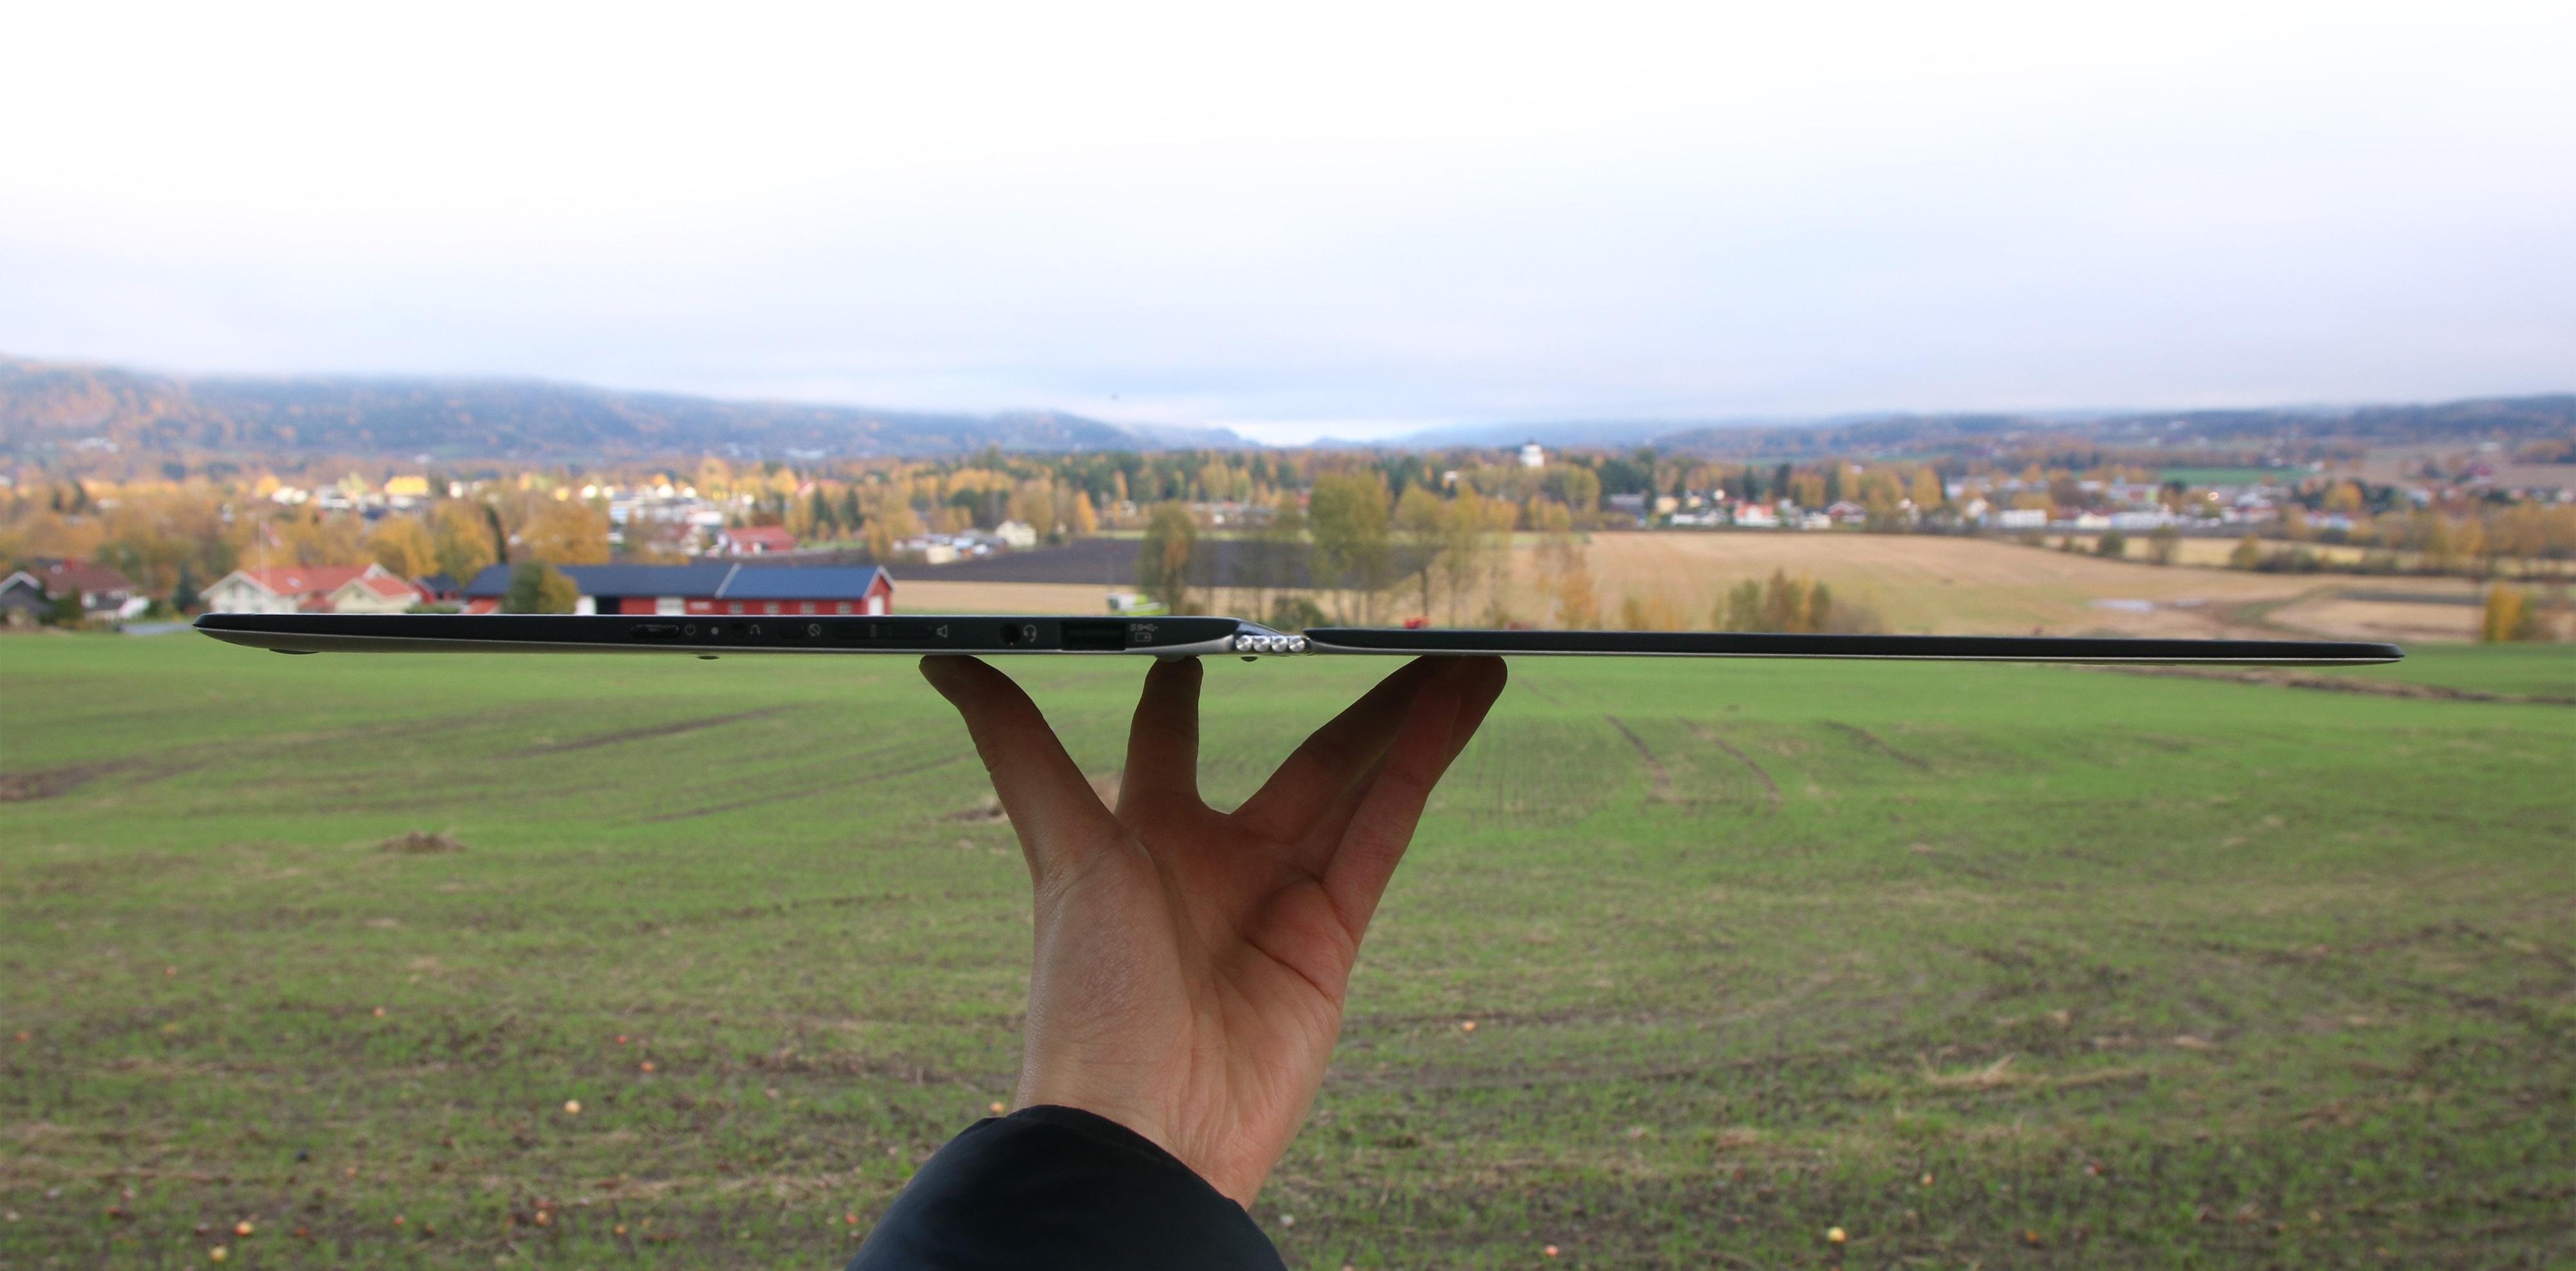 Lenovos Yoga 3 Pro er så tynn at det er vanskelig å fokusere når vi skal ta bilde av den.Foto: Anders Brattensborg Smedsrud, Tek.no